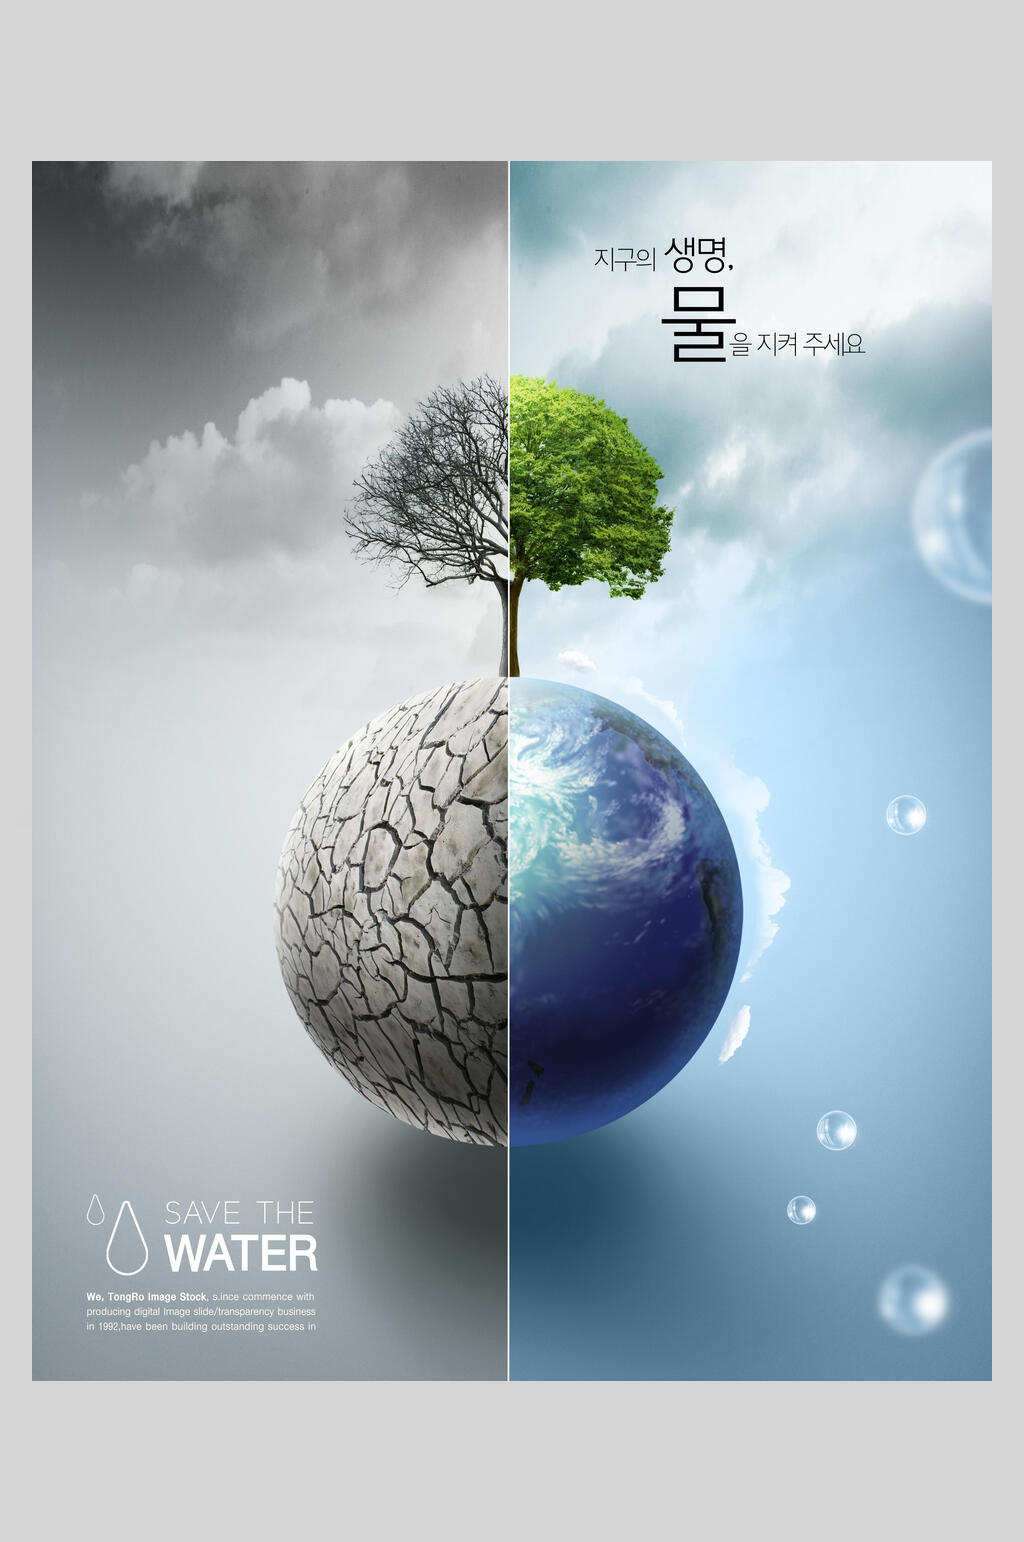 创意合唱图保护水资源环保公益海报